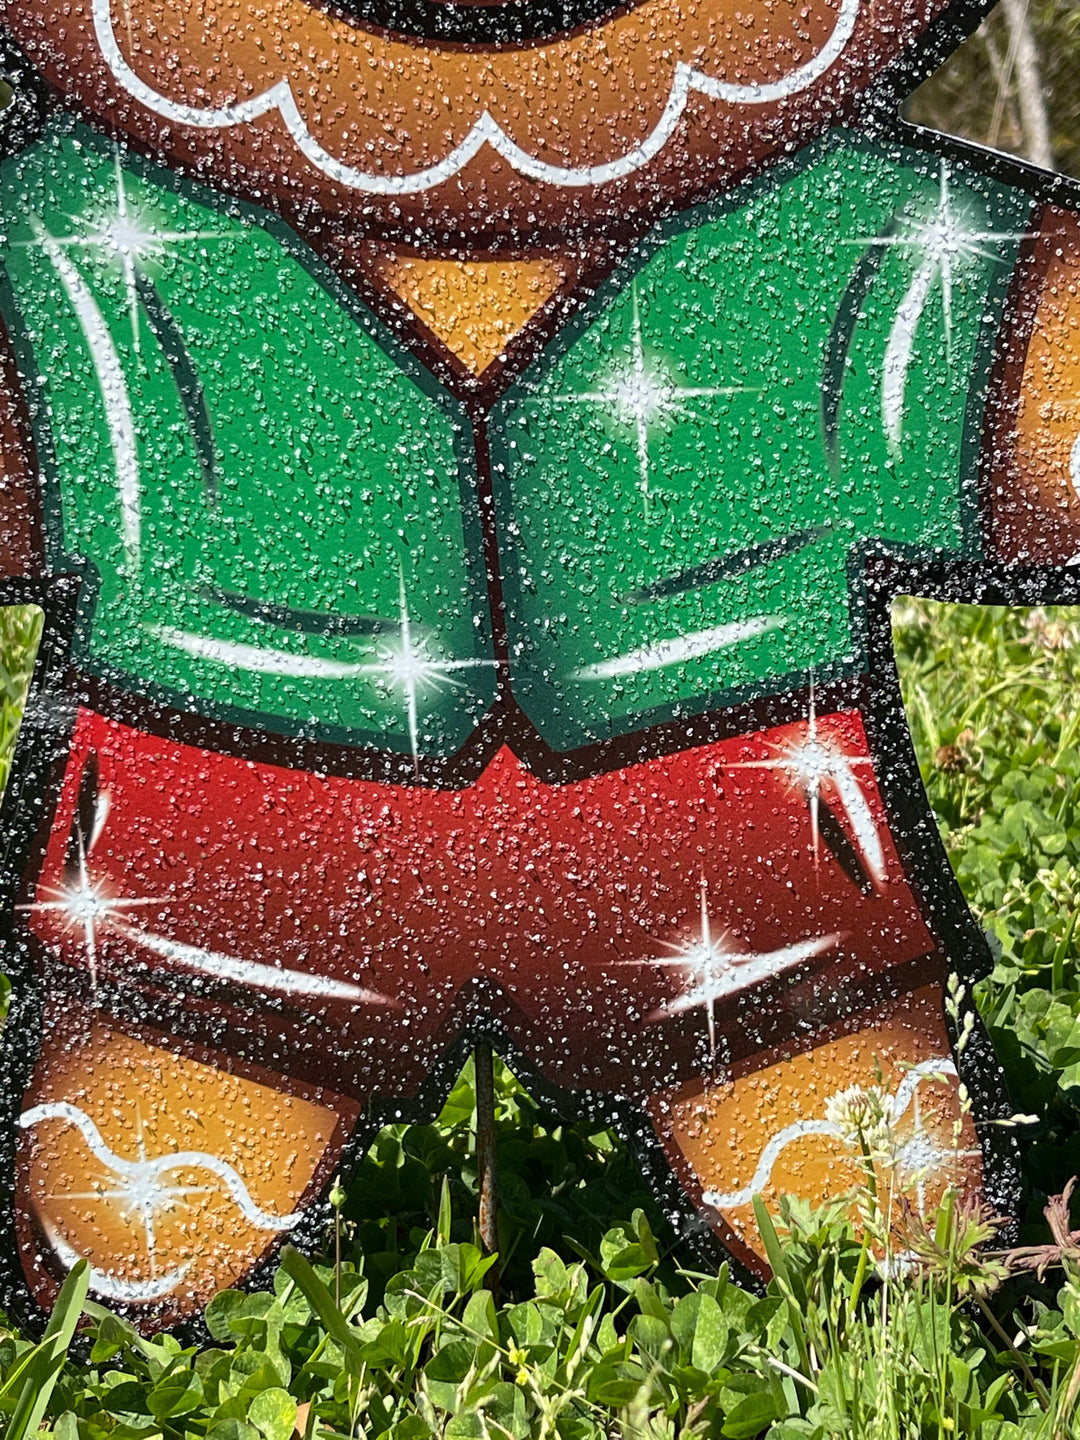 Christmas Gingerbread boy Yard Art